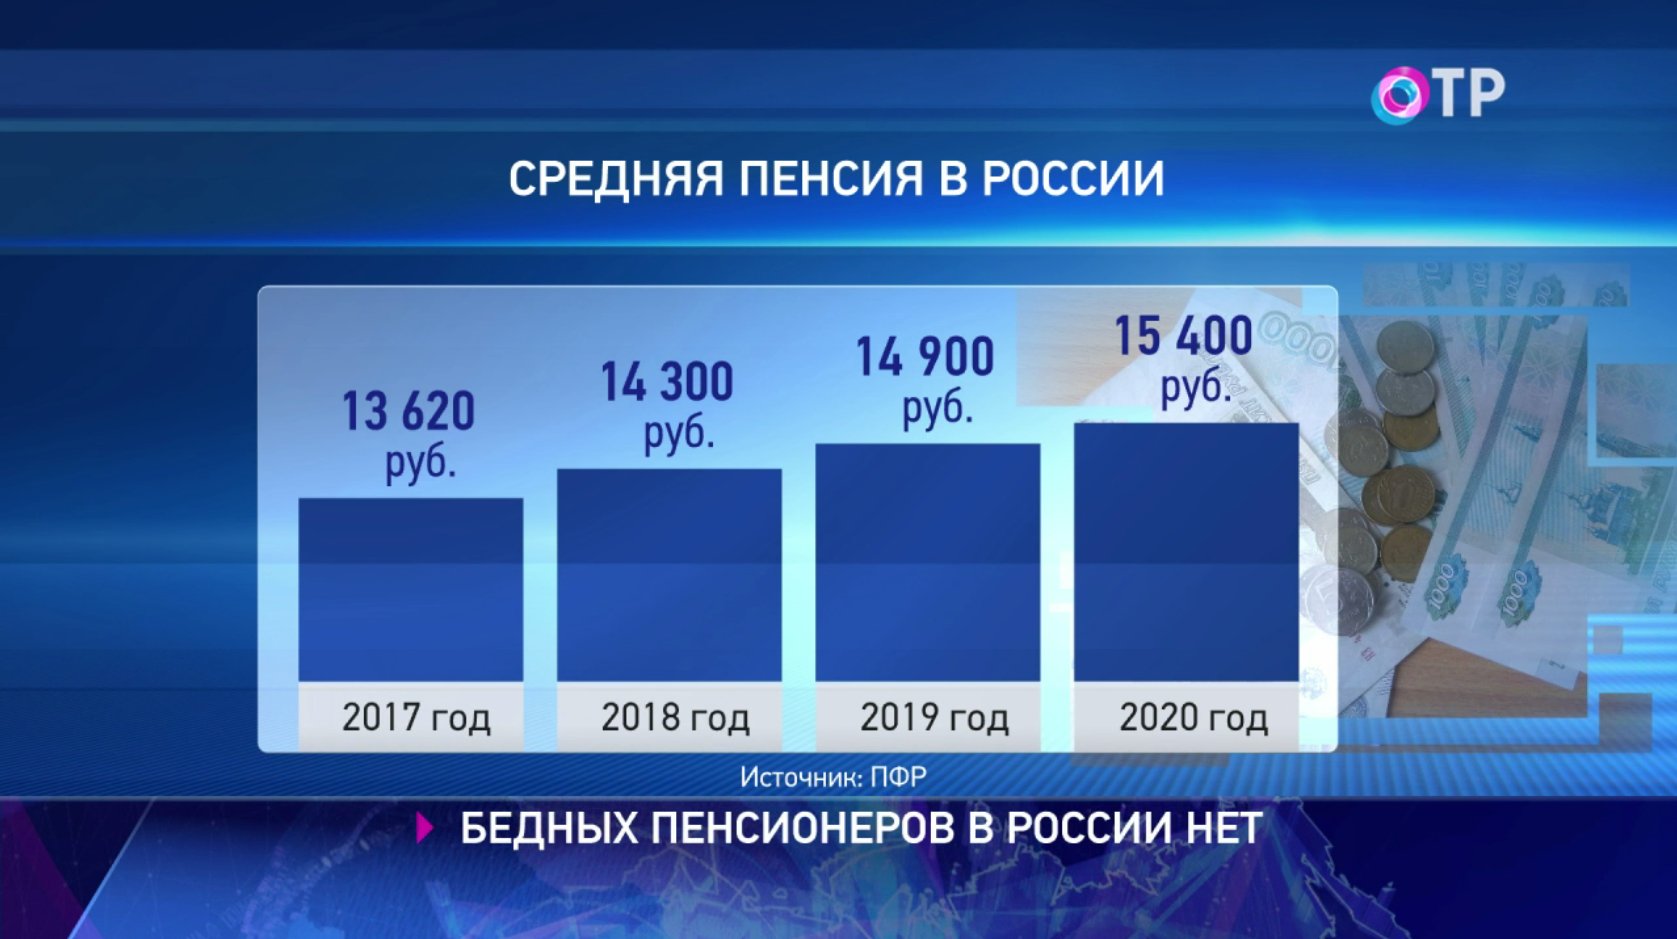 Пенсия в 2000 году в россии. Средняя пенсия в России в 2021. Средний размер пенсии в России в 2021. Средняя пенсия по России в 2021 году. Средний размер пенсии в России в 2020 году.